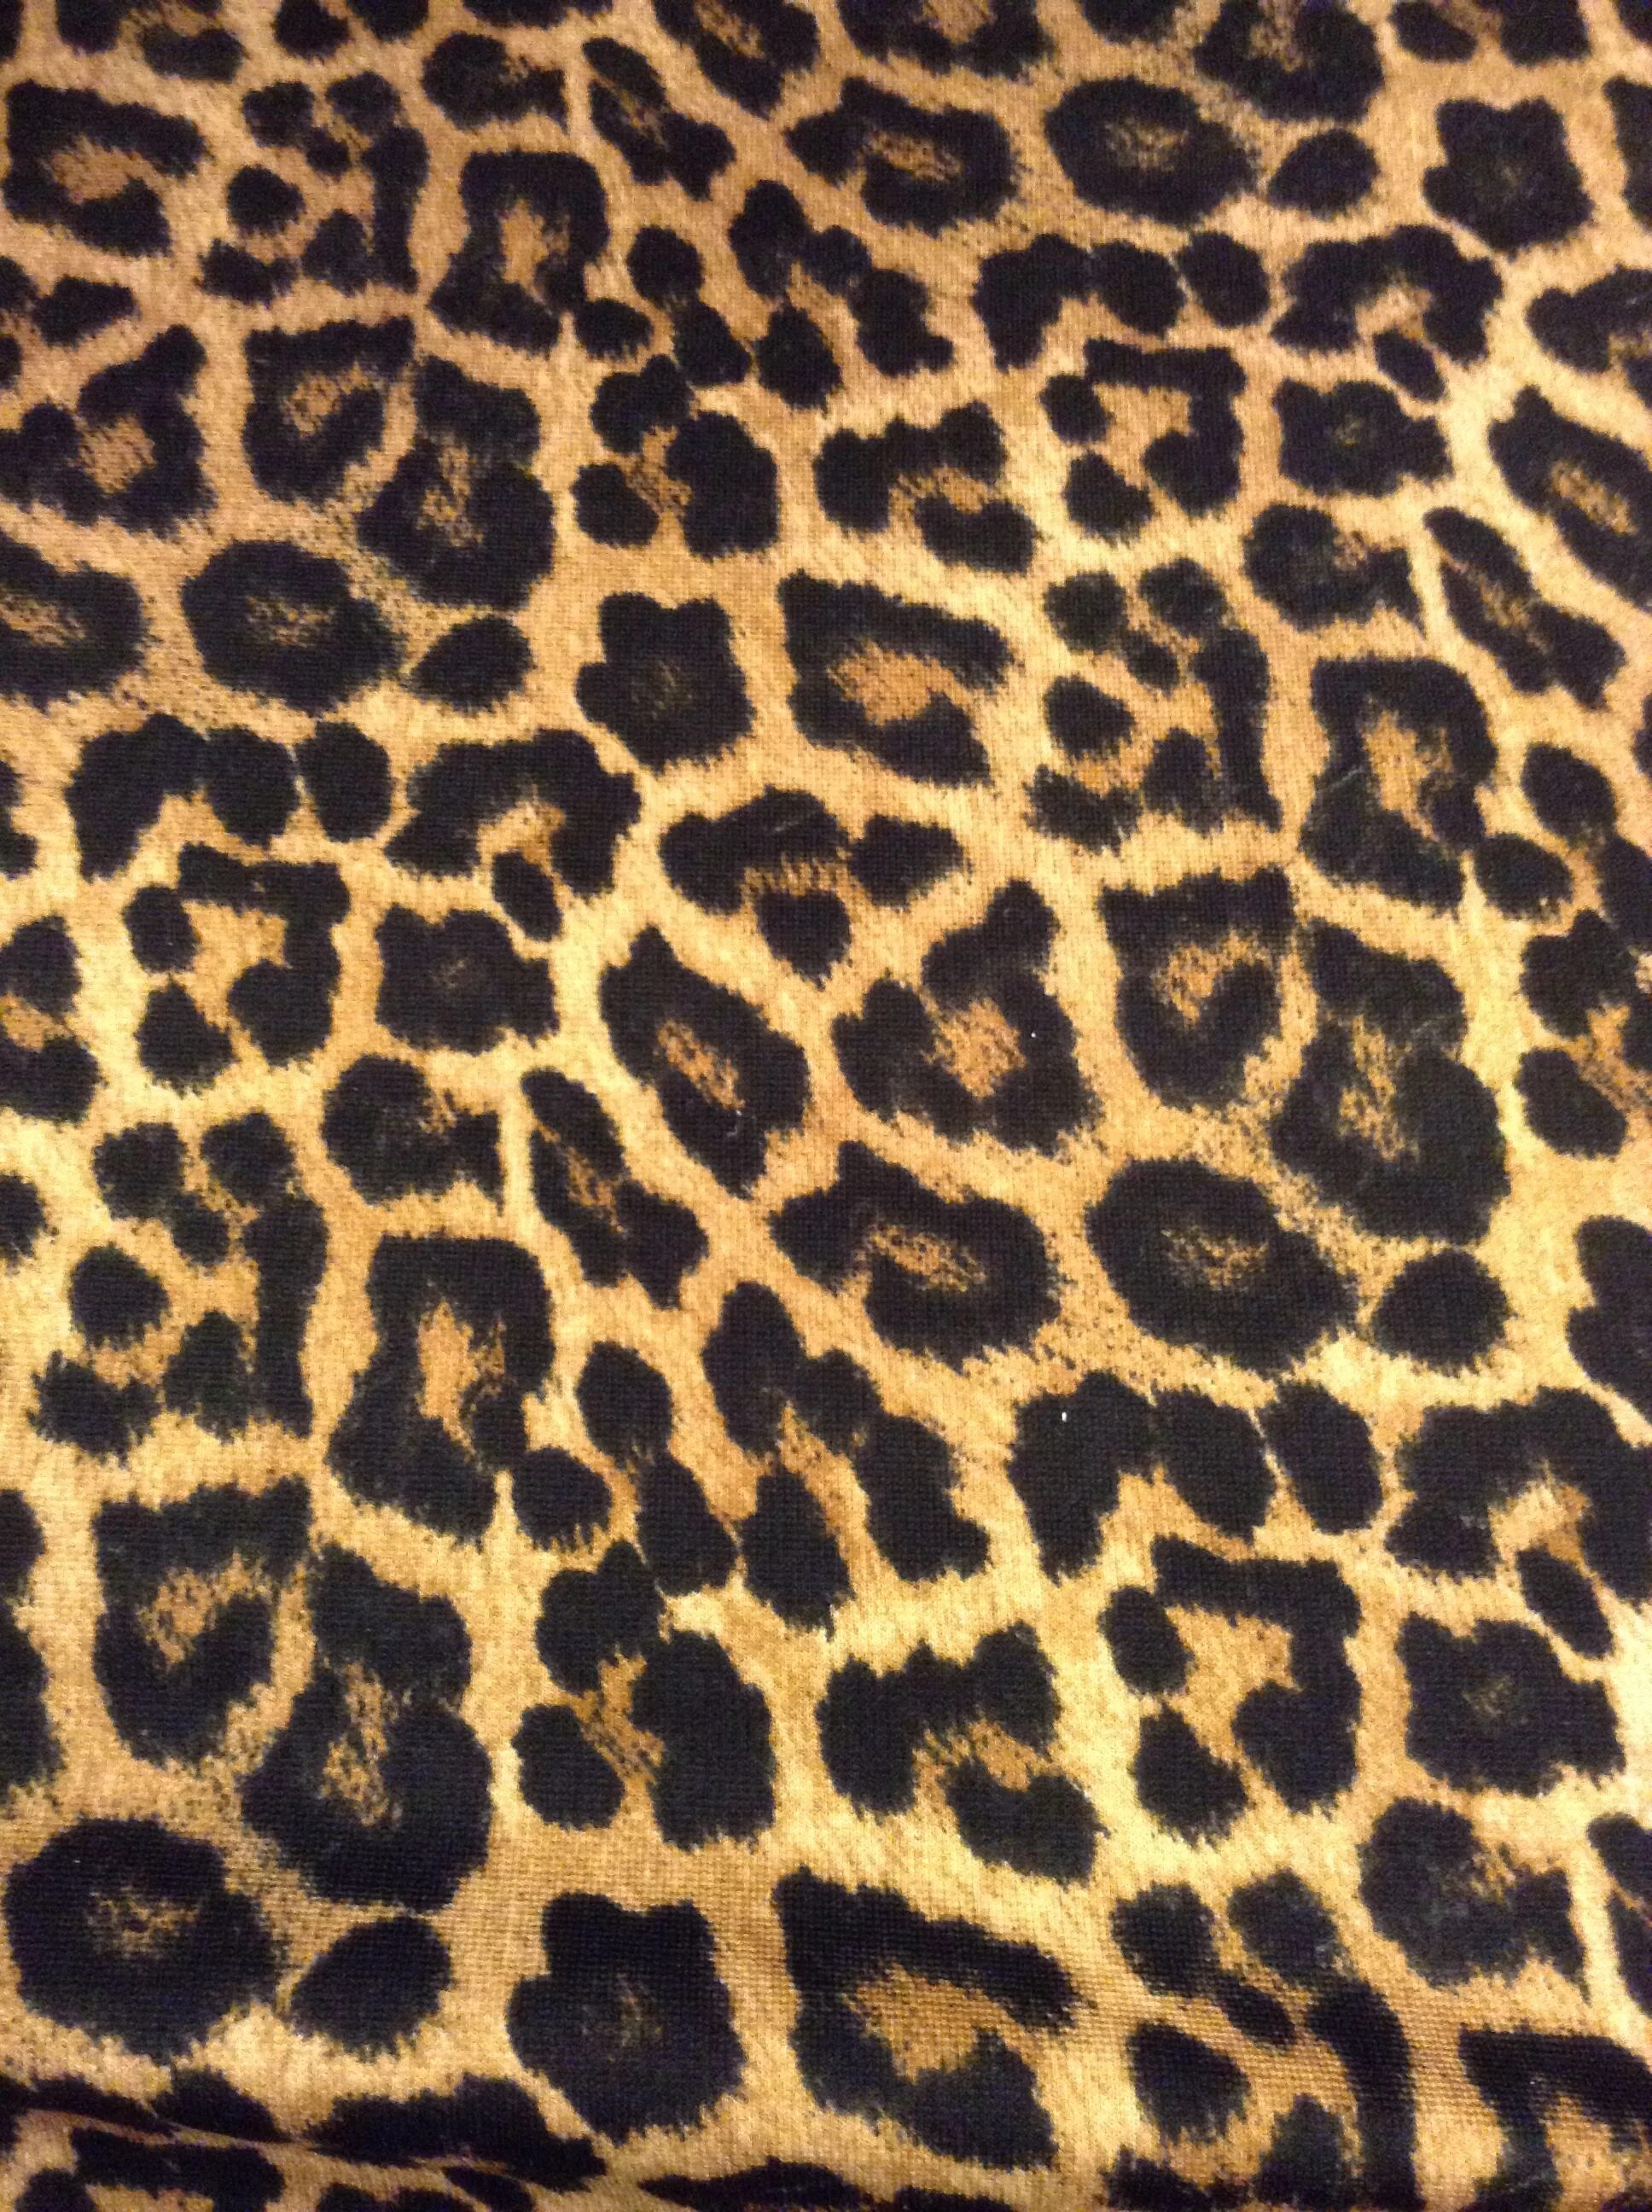 Animal pattern. Леопард фон. Леопард паттерн. Леопардовая расцветка 2022. Леопардовый принт вектор.